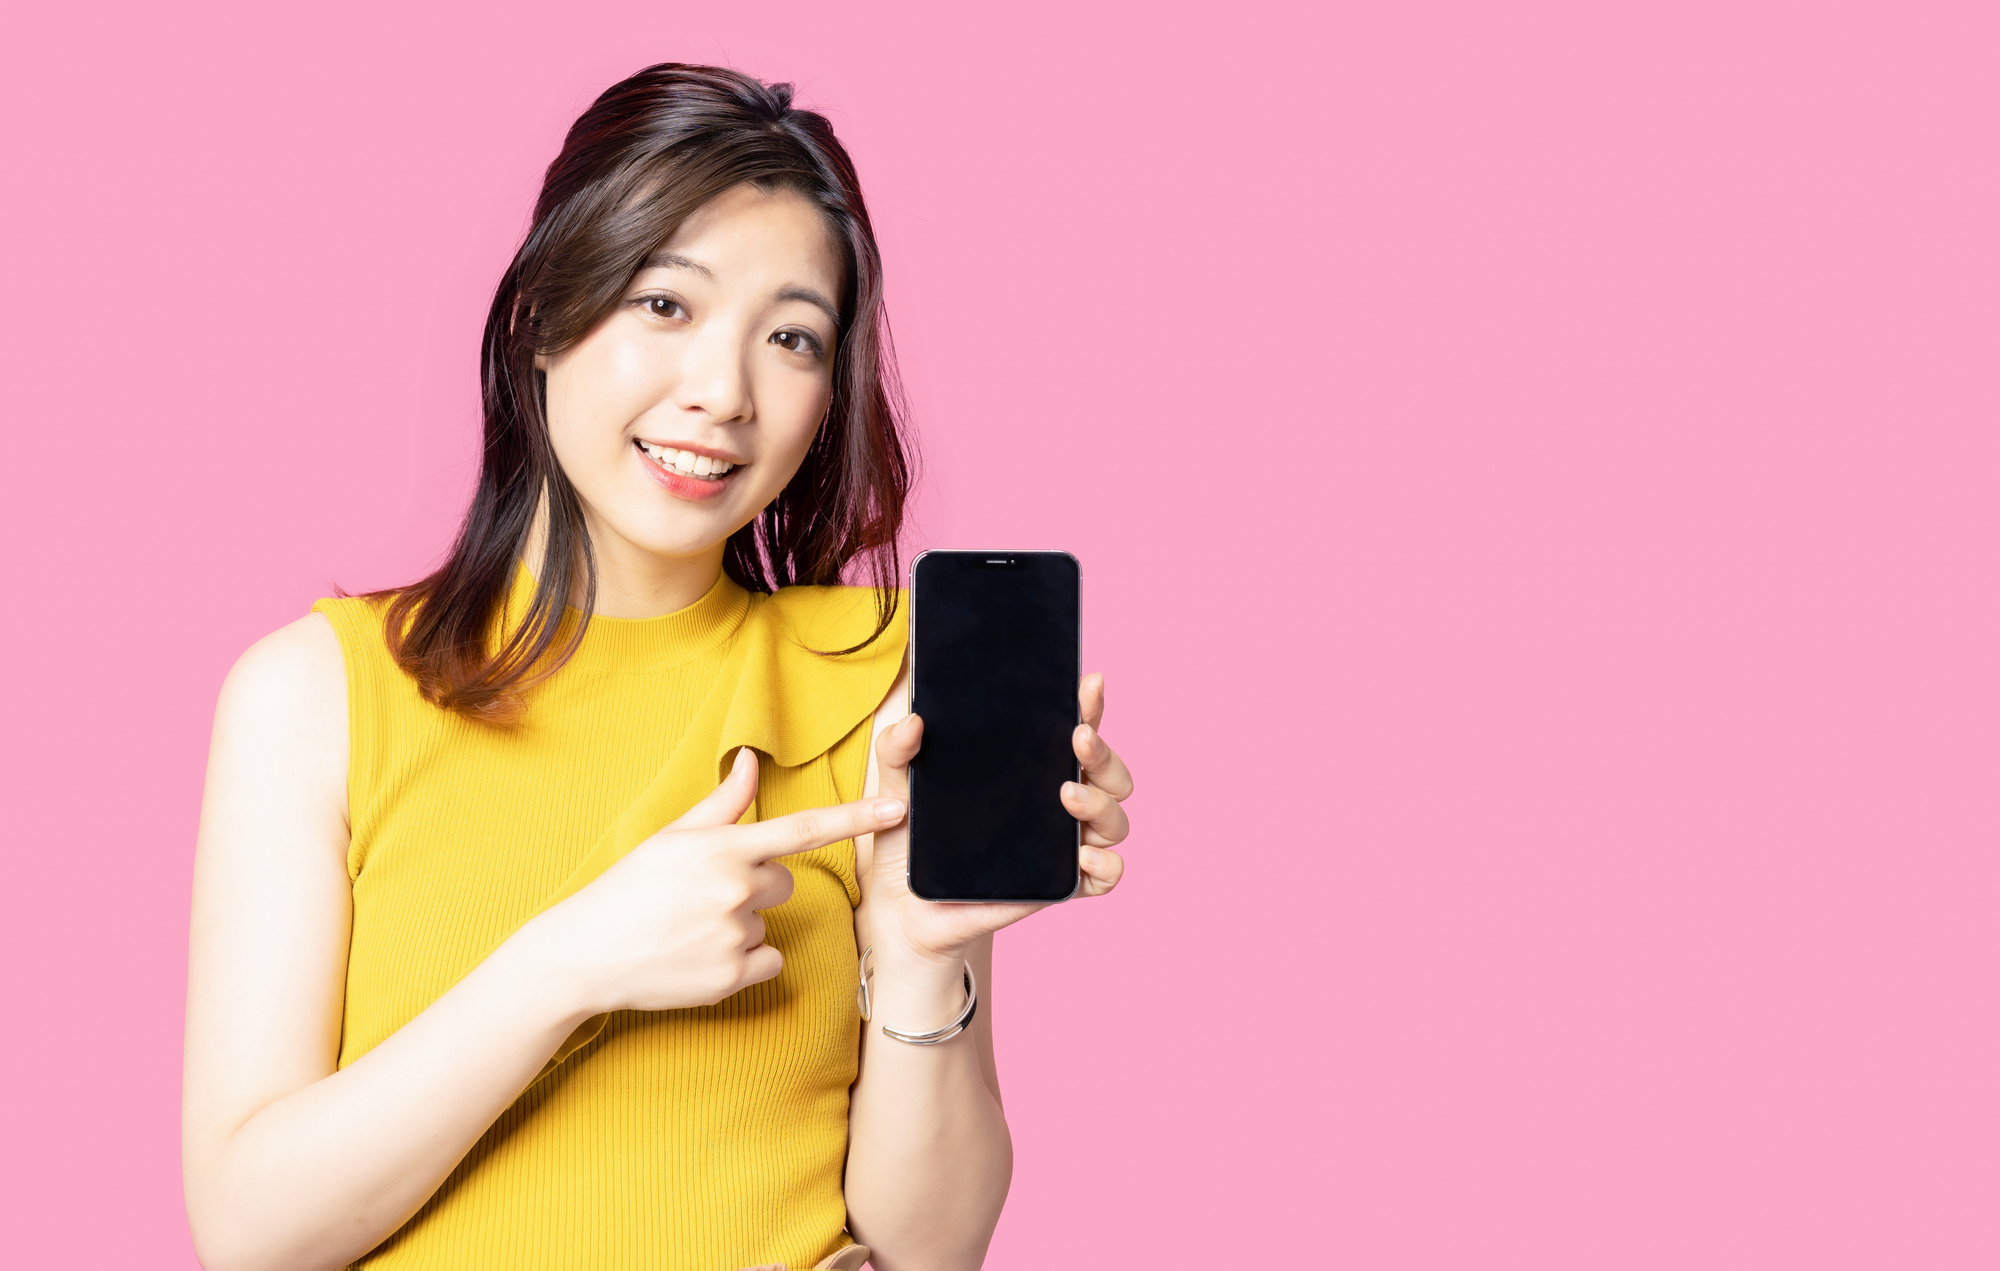 ピンク色の壁を背景にスマートフォンを指さしている女性